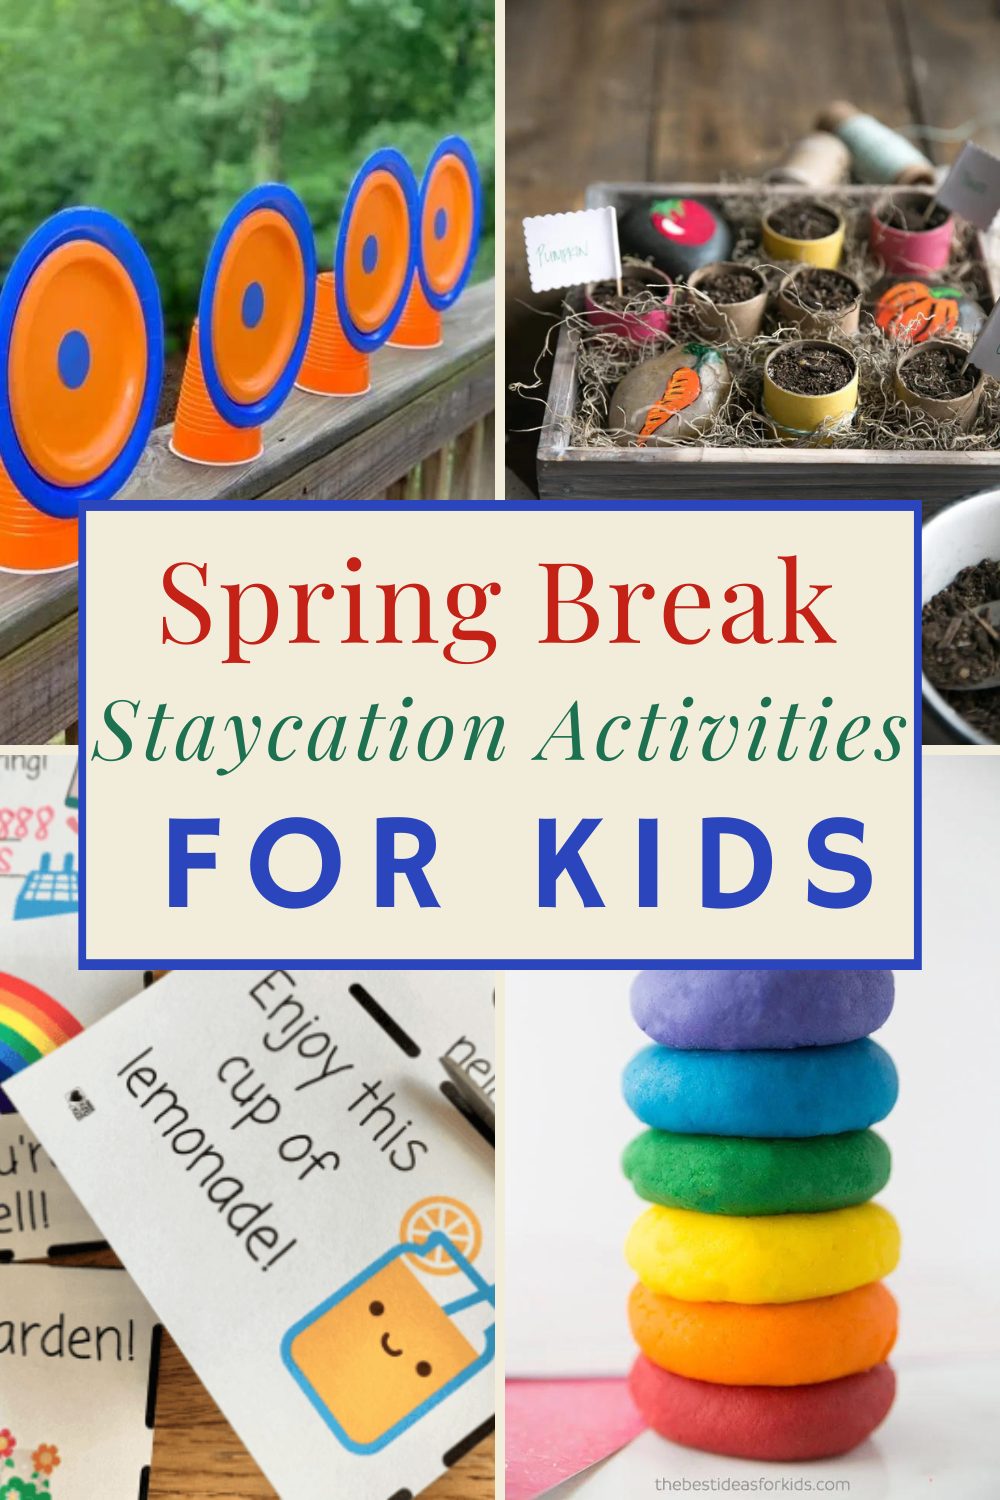 Spring Break Staycation Ideas